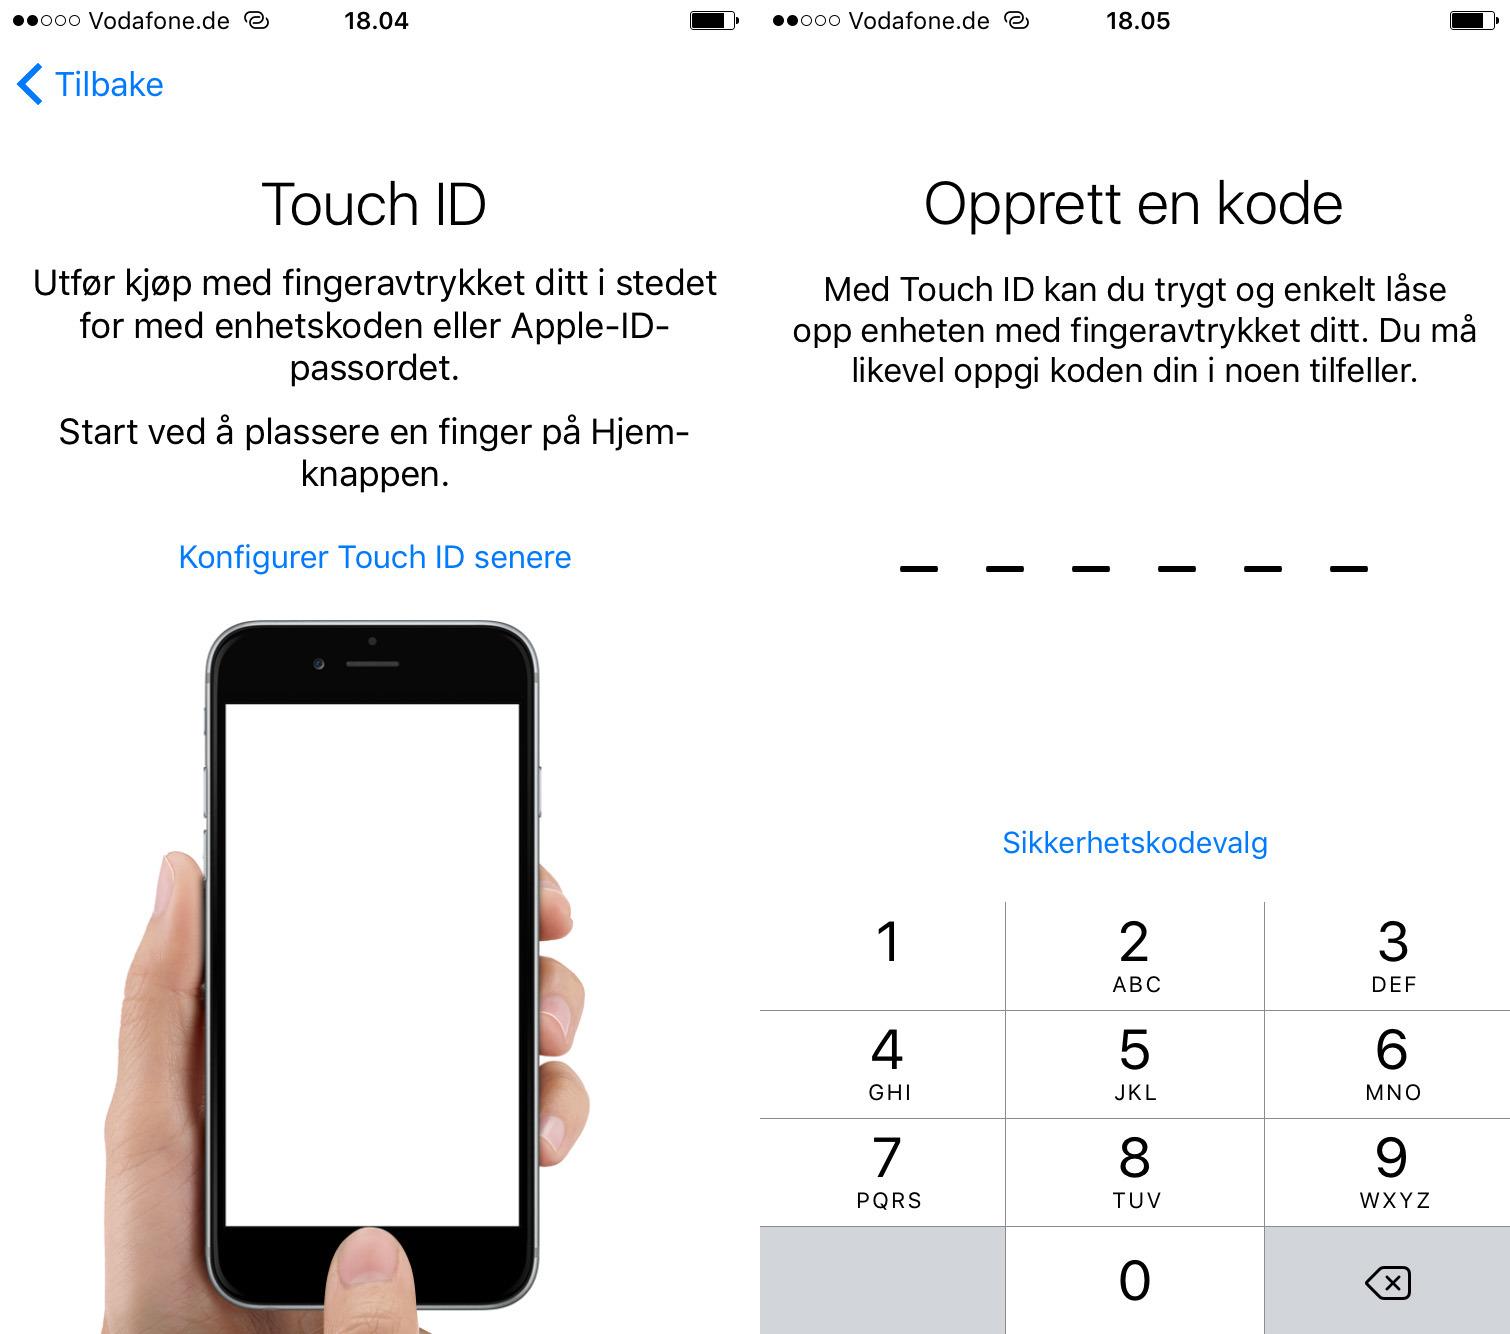 Touch ID-sensoren som registrerer fingeravtrykk har blitt veldig mye kjappere i nyeste iPhone-modell. Nå er også koden som hører til sekssifret. Foto: Finn Jarle Kvalheim, Tek.no